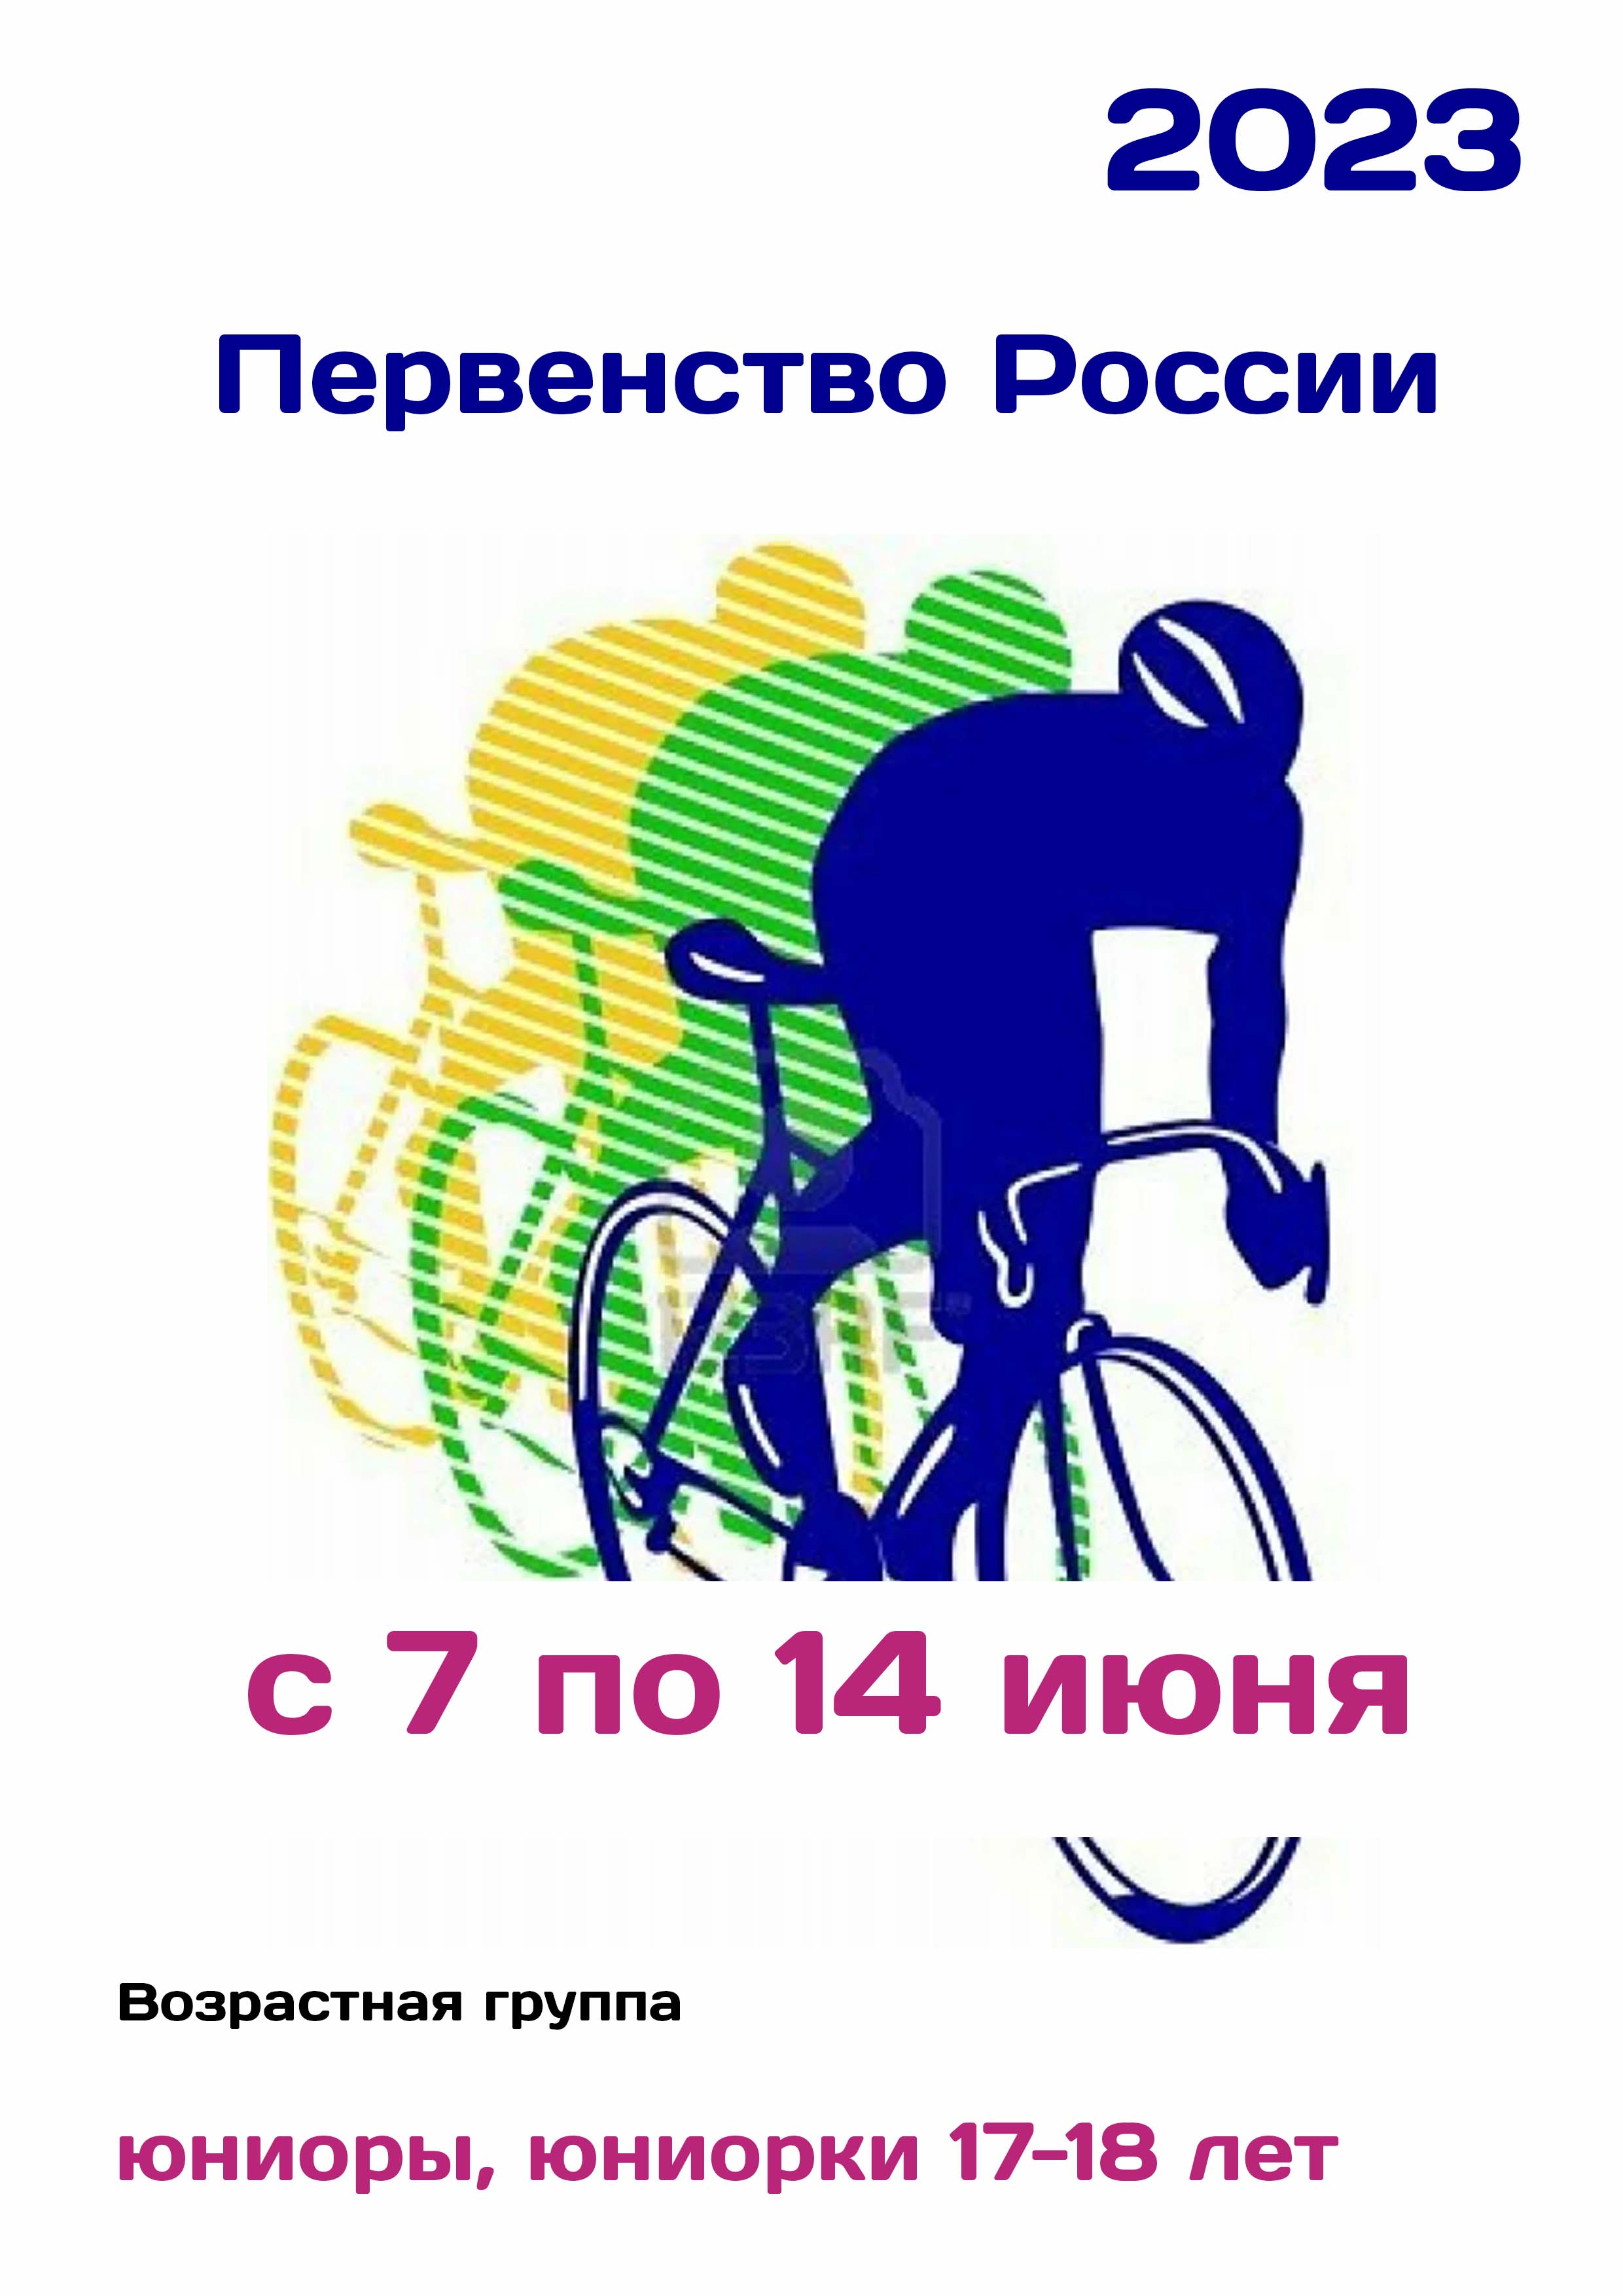 Первенство России по велоспорту 7  iyun
 2023  yaş
 